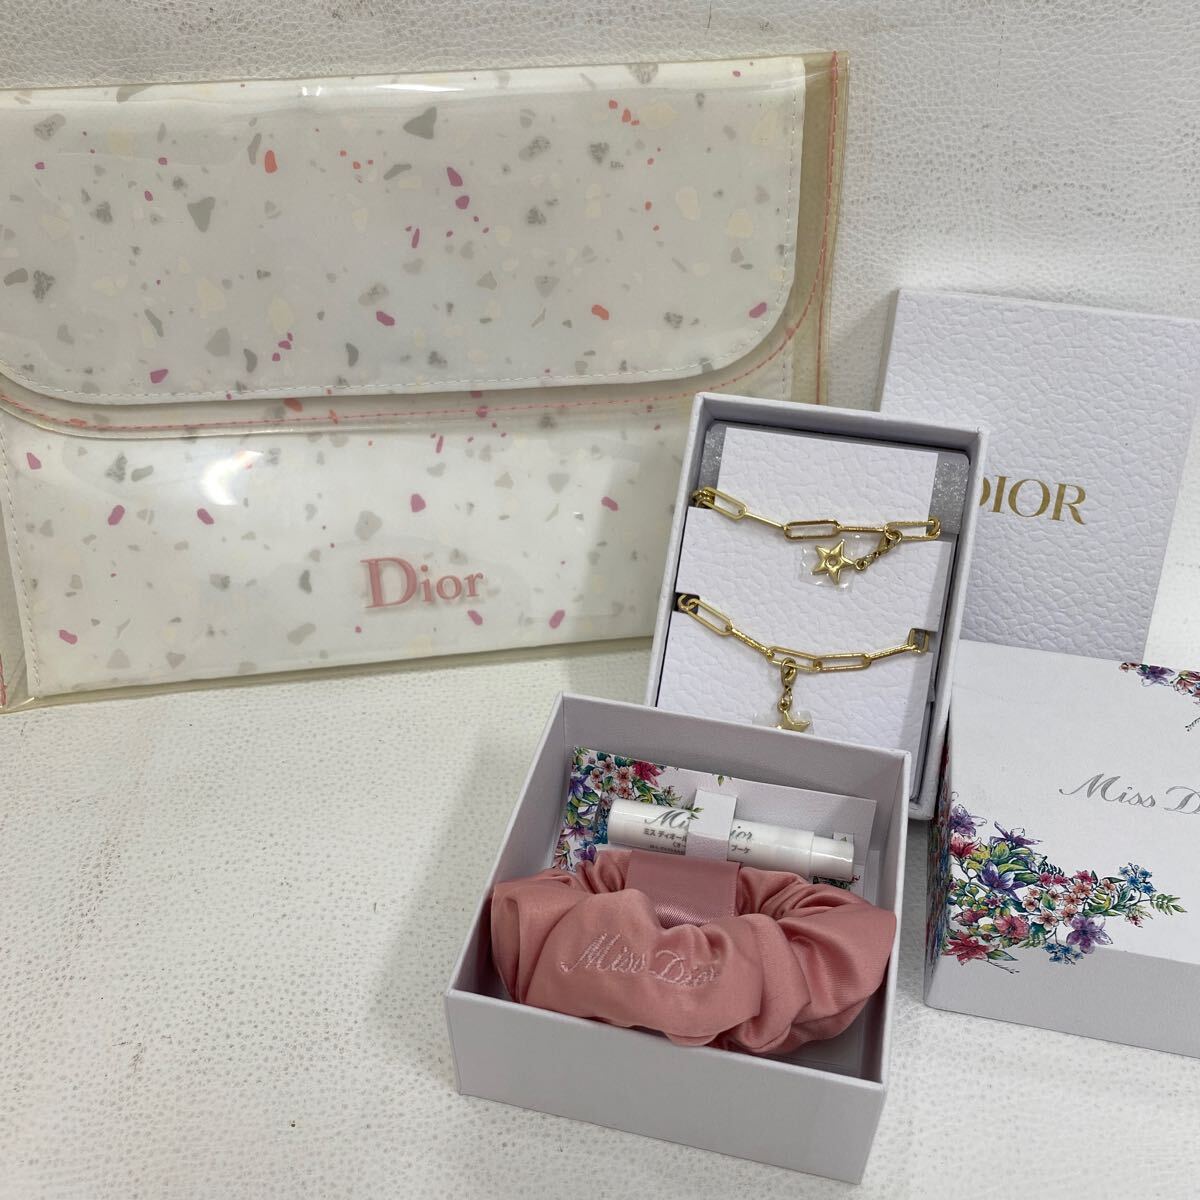 □9132【卸売】Christian Dior クリスチャンディオール ポーチ キーホルダー チャーム シュシュ ミニオードゥトワレ付き レディースの画像1